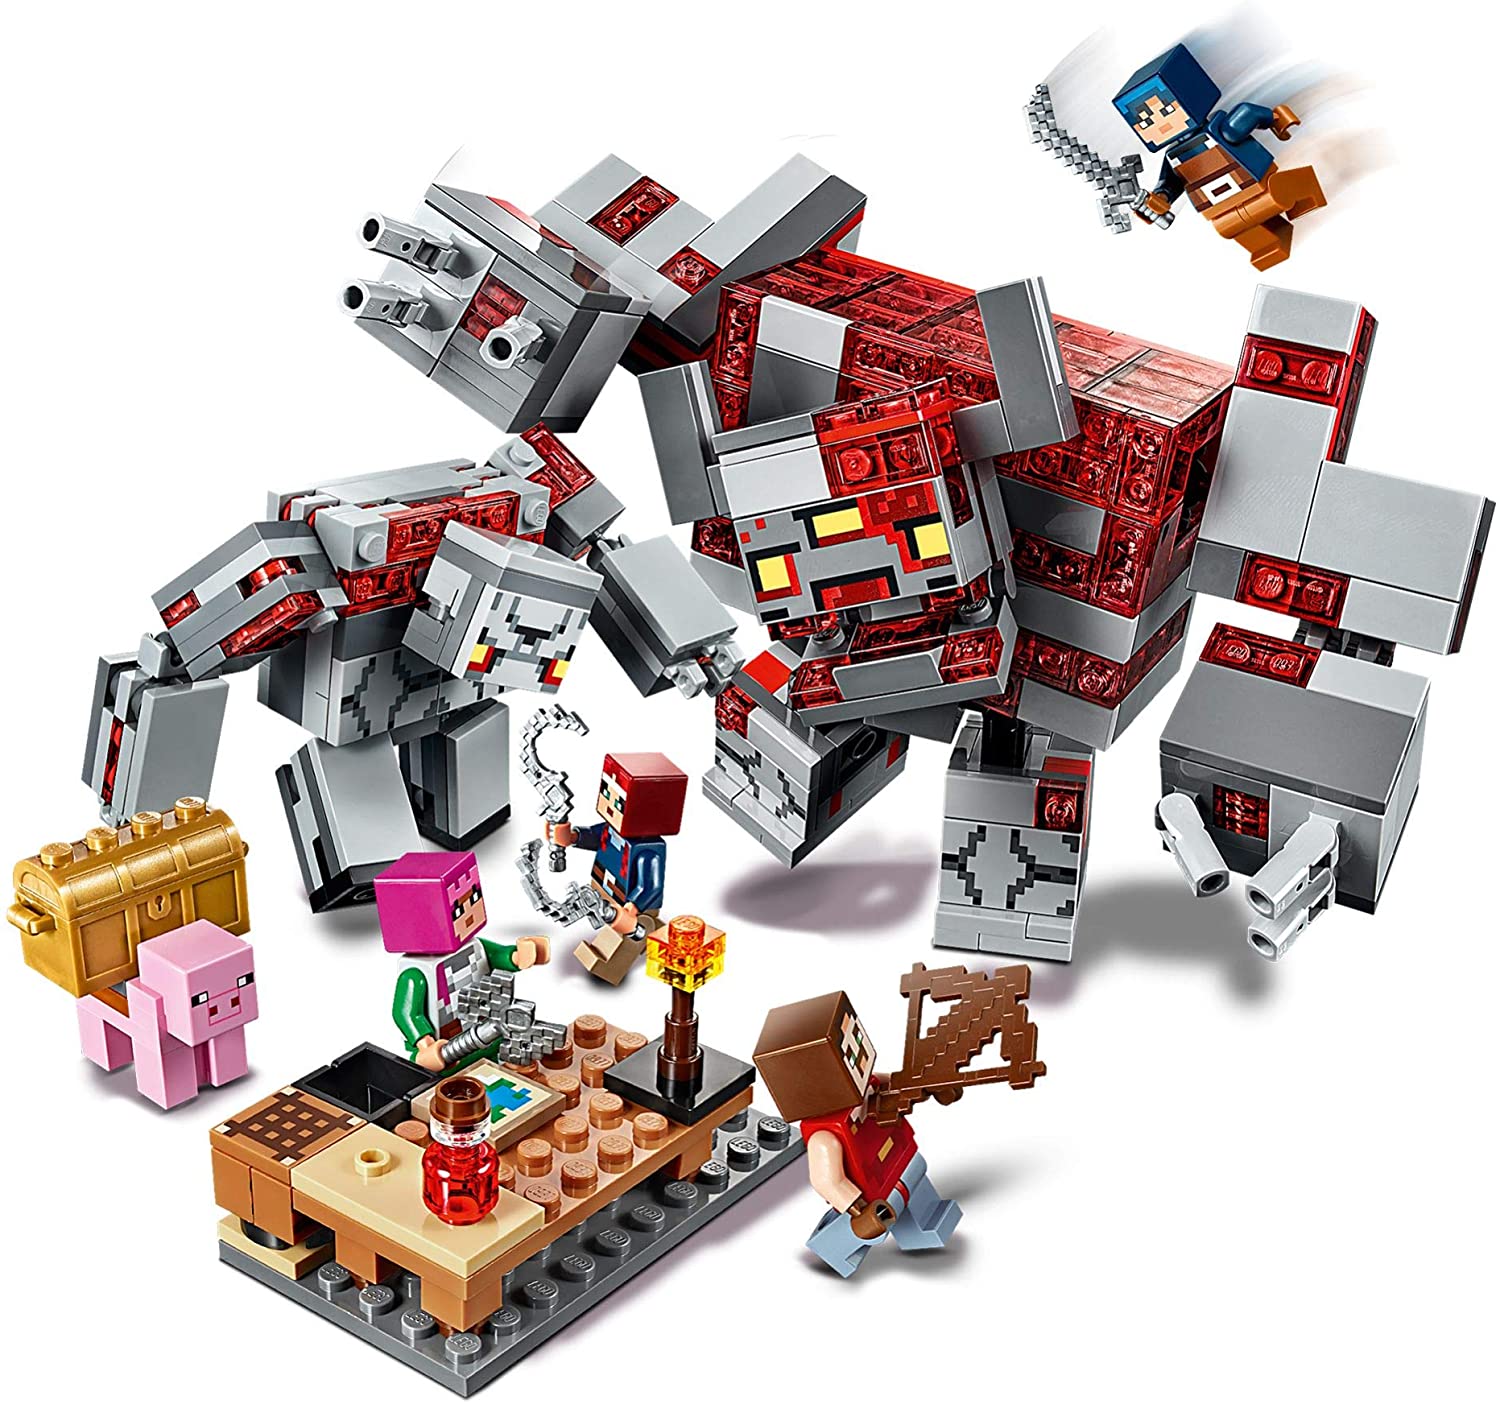 Lego Minecraft Summer Sets Revealed On Amazon The Brick Fan